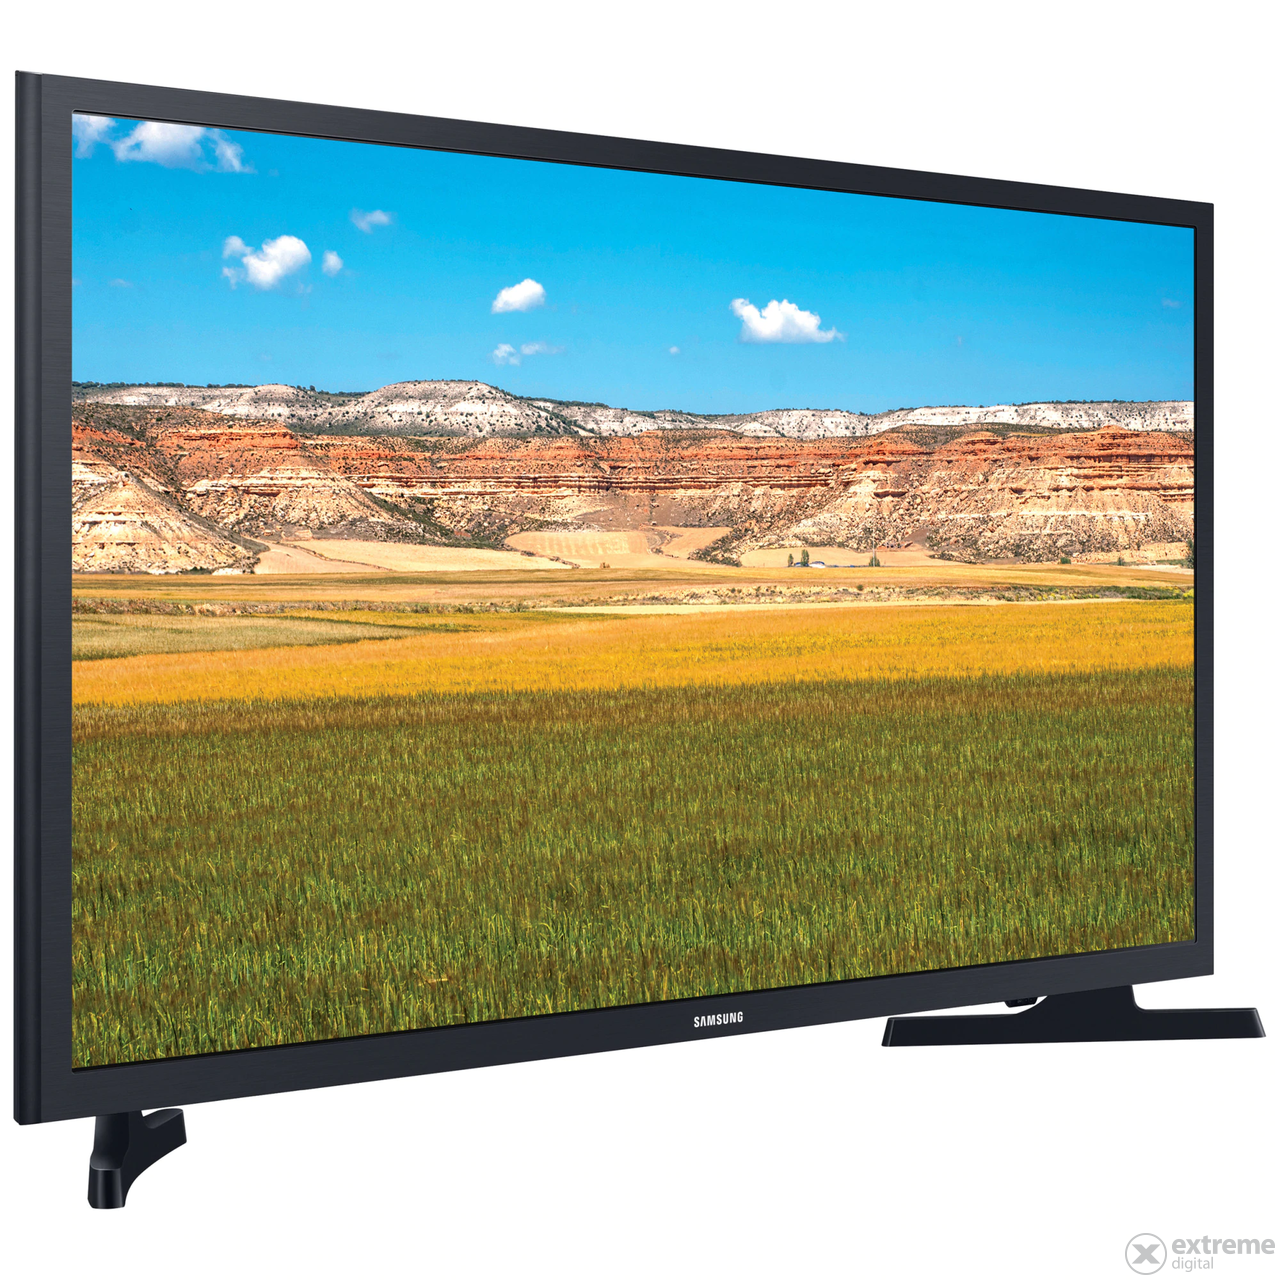 Samsung UE32T4302 SMART LED Televize